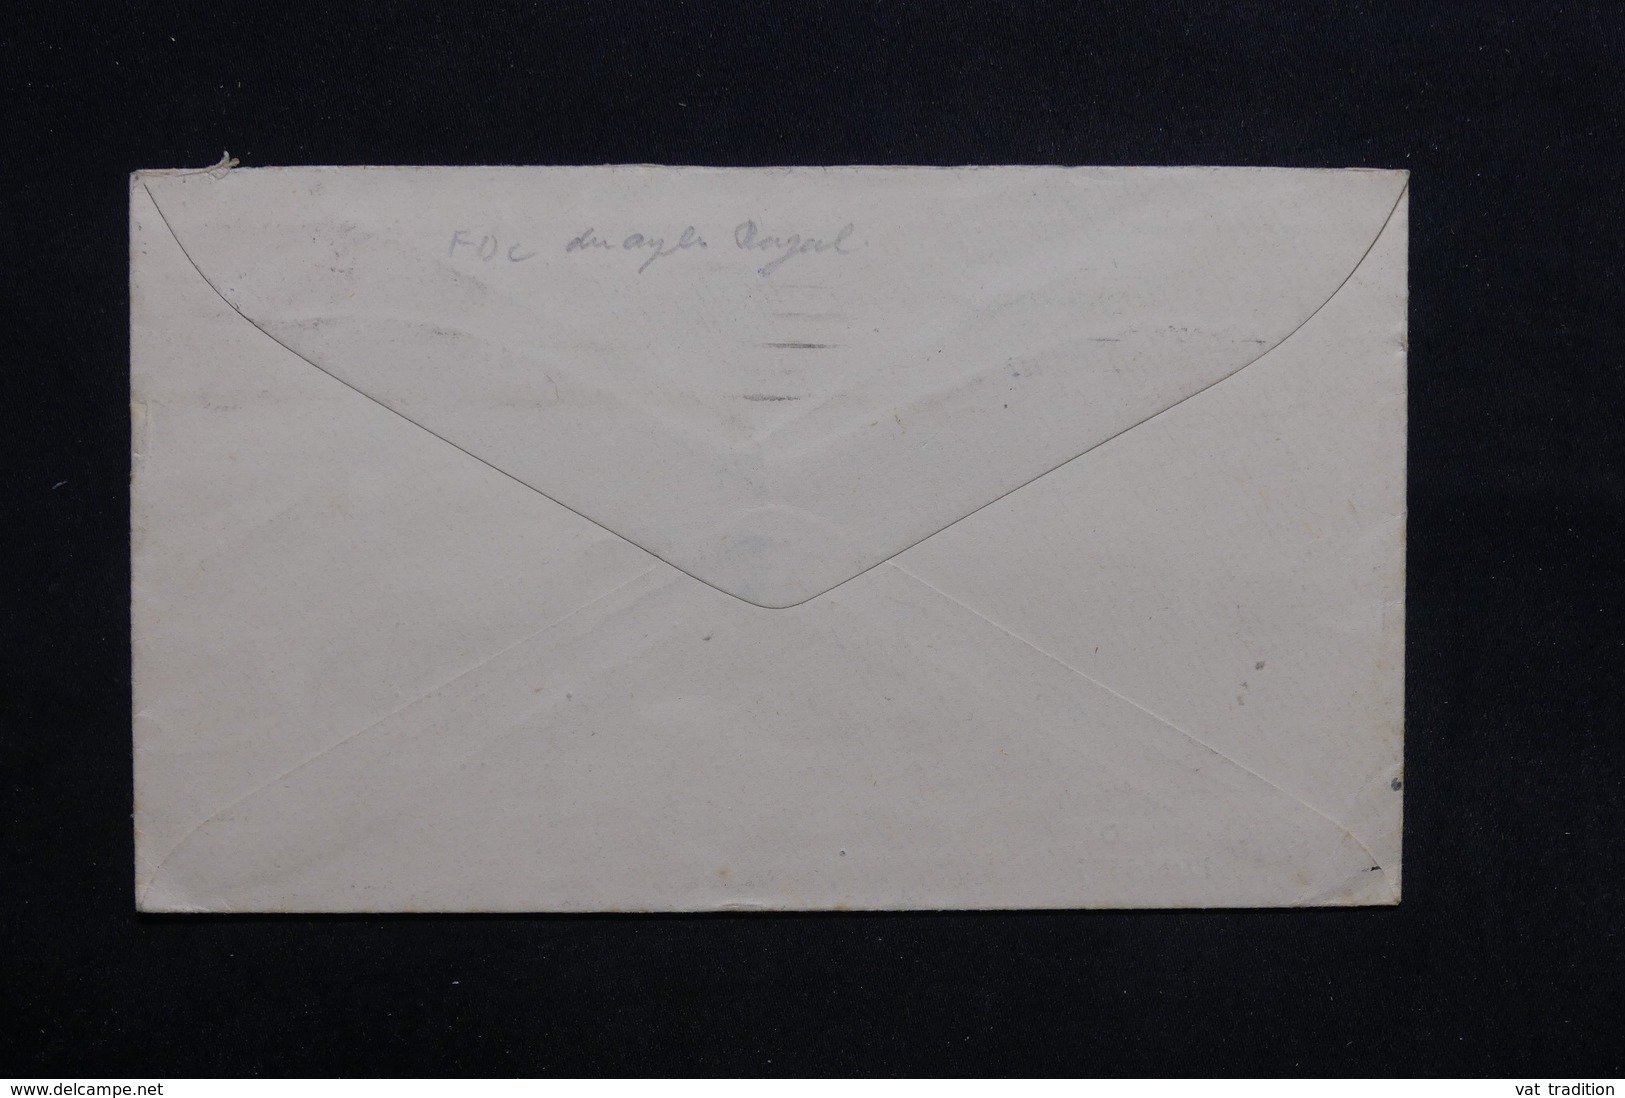 ROYAUME UNI - Enveloppe FDC En 1937 - King George VI - L 32805 - ....-1951 Pre-Elizabeth II